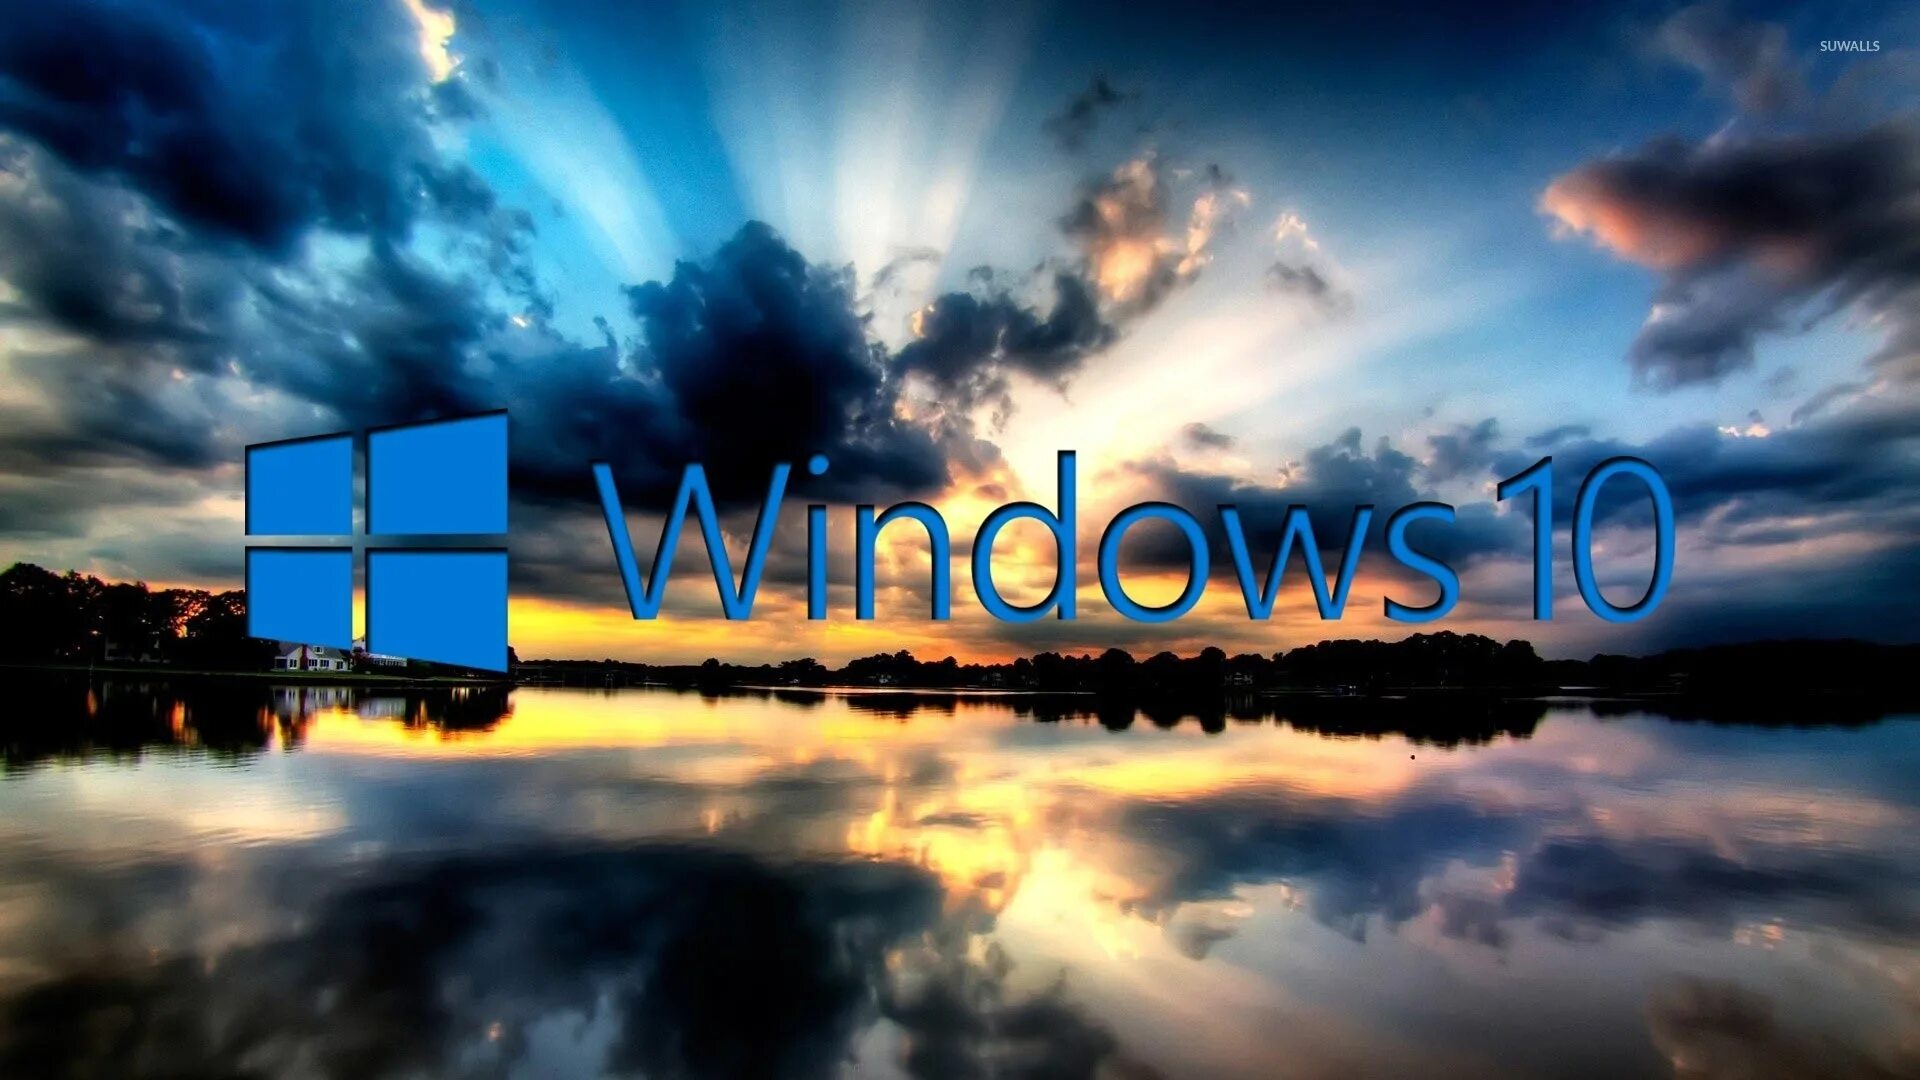 Фоновые рисунки Windows 10. Картинки на рабочий стол Windows 10. Фон рабочего стола виндовс 10.